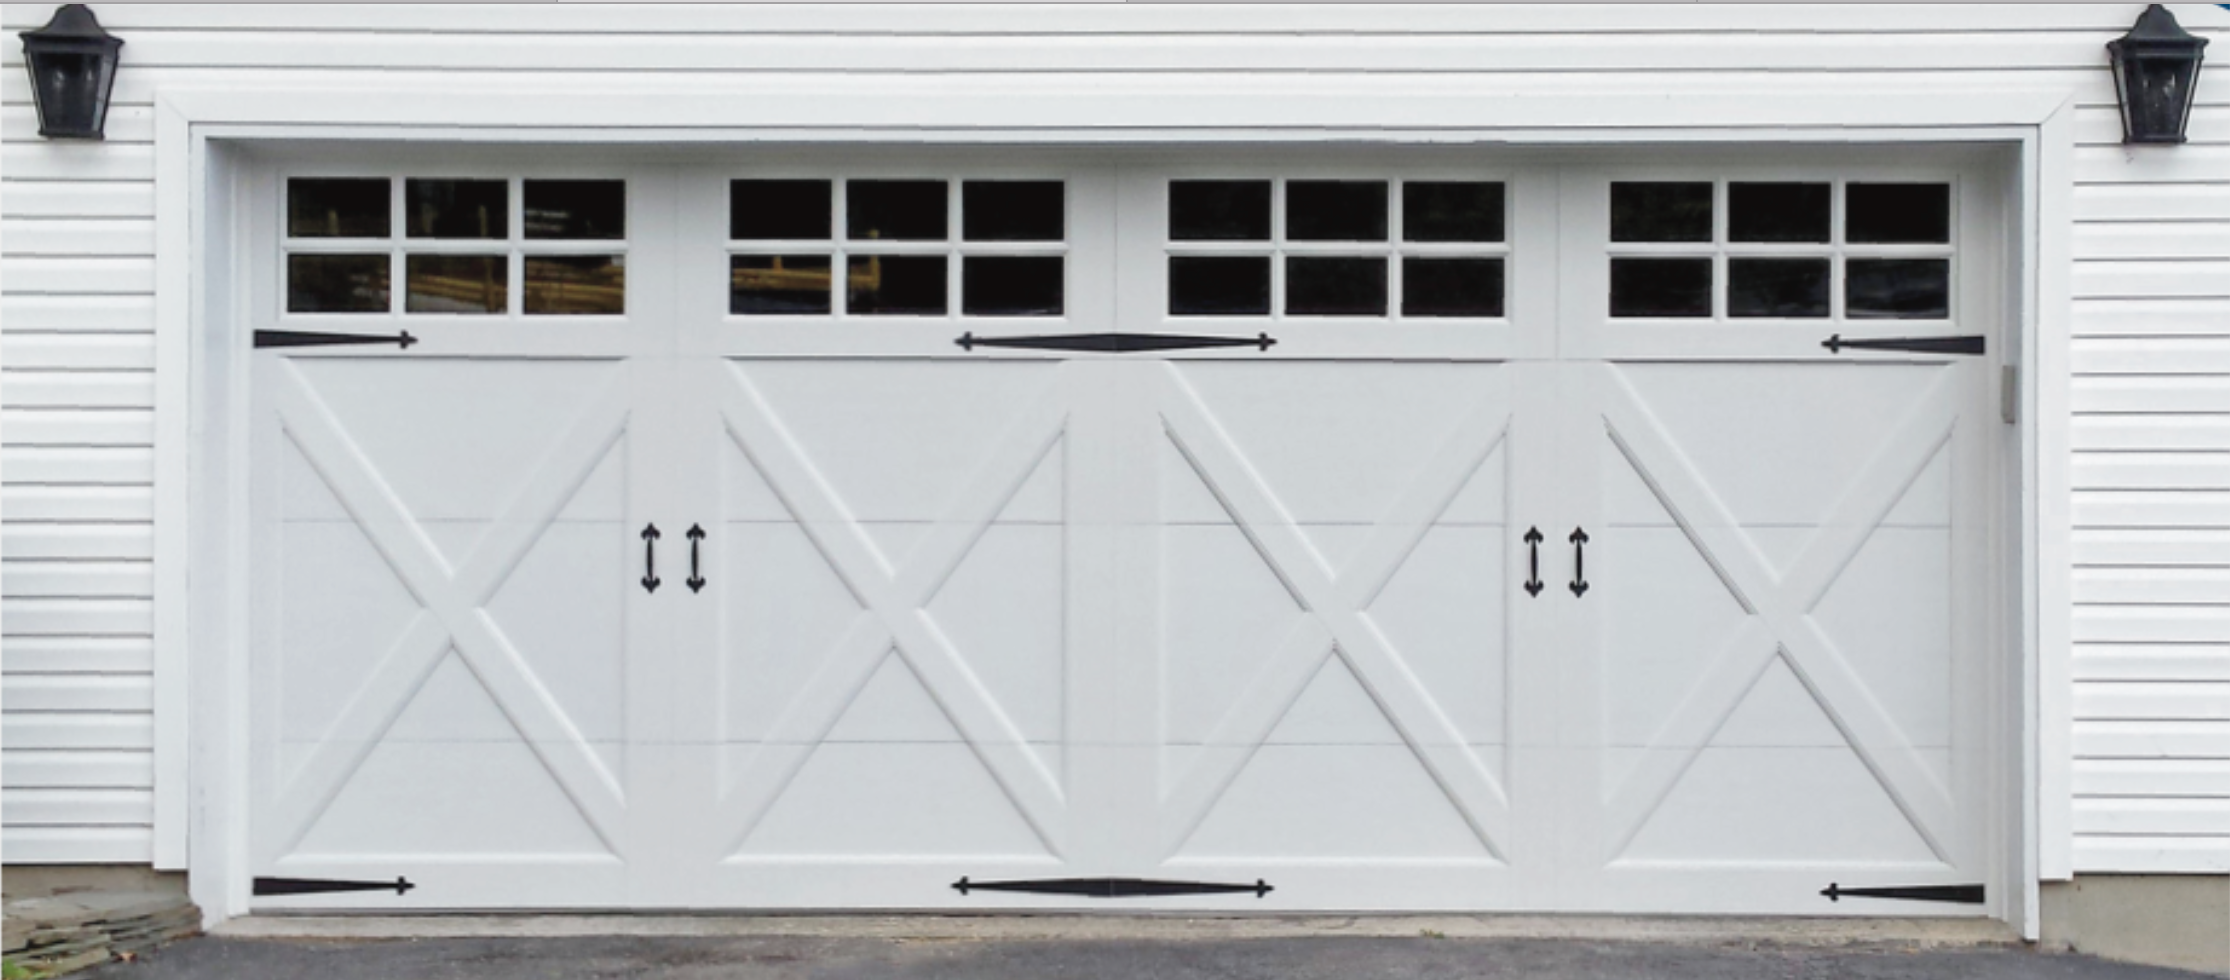 Double Garage Door Or Two Single Doors, What Is A Double Garage Door